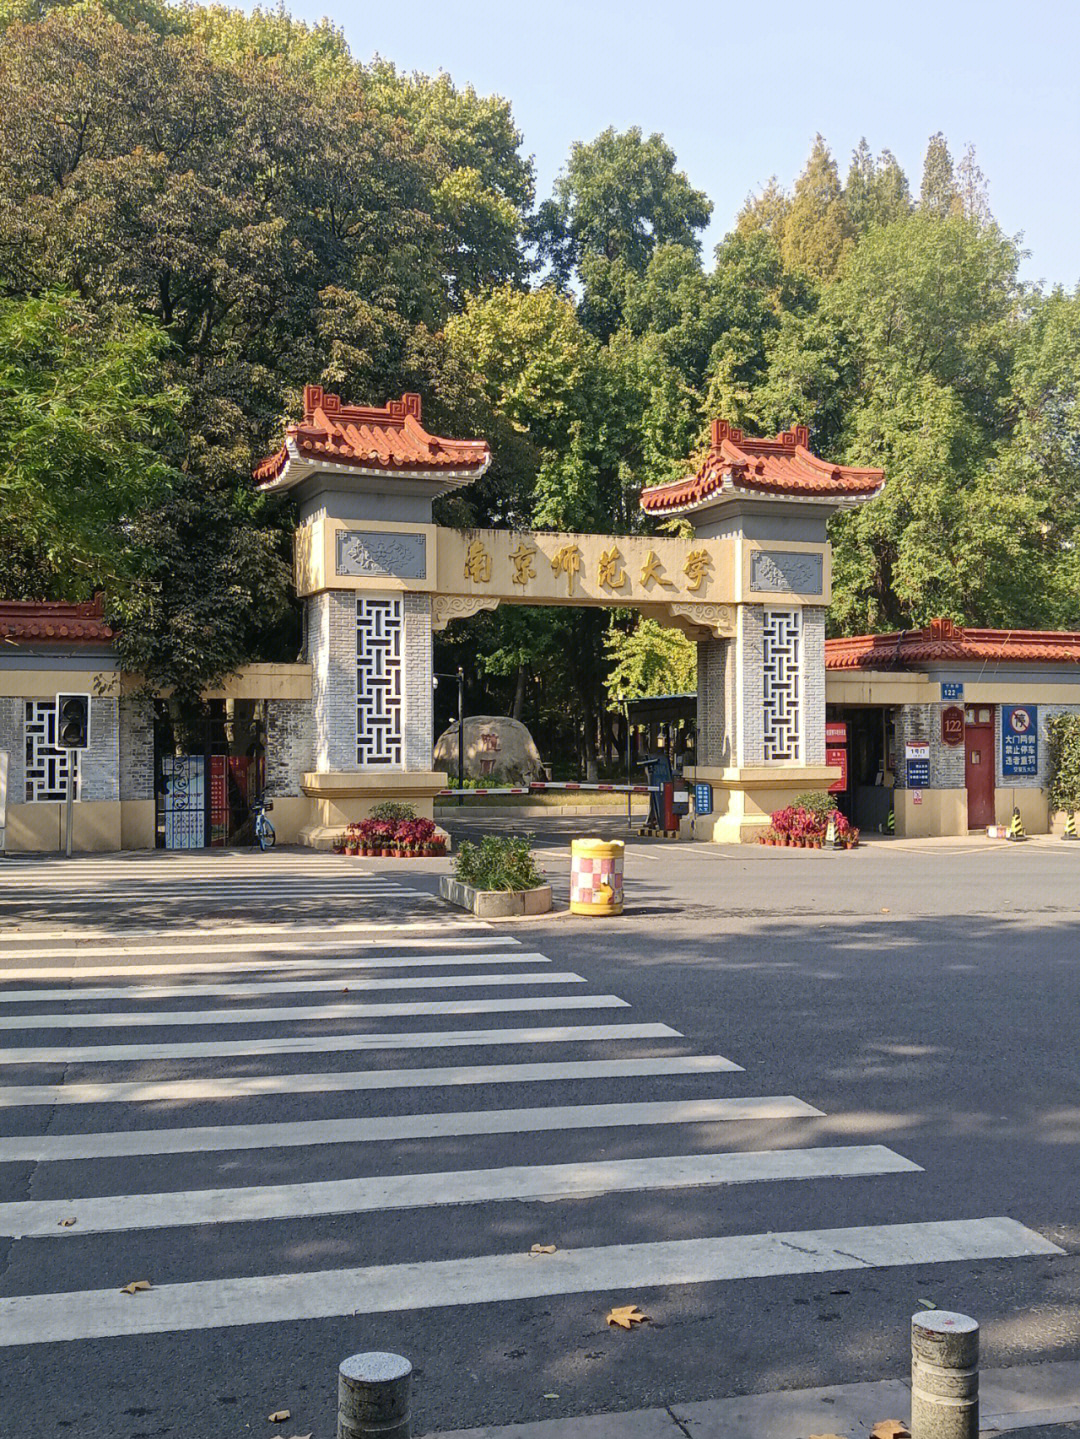 南京师范大学随园校区被誉为东方最美校园,周末无事去参观